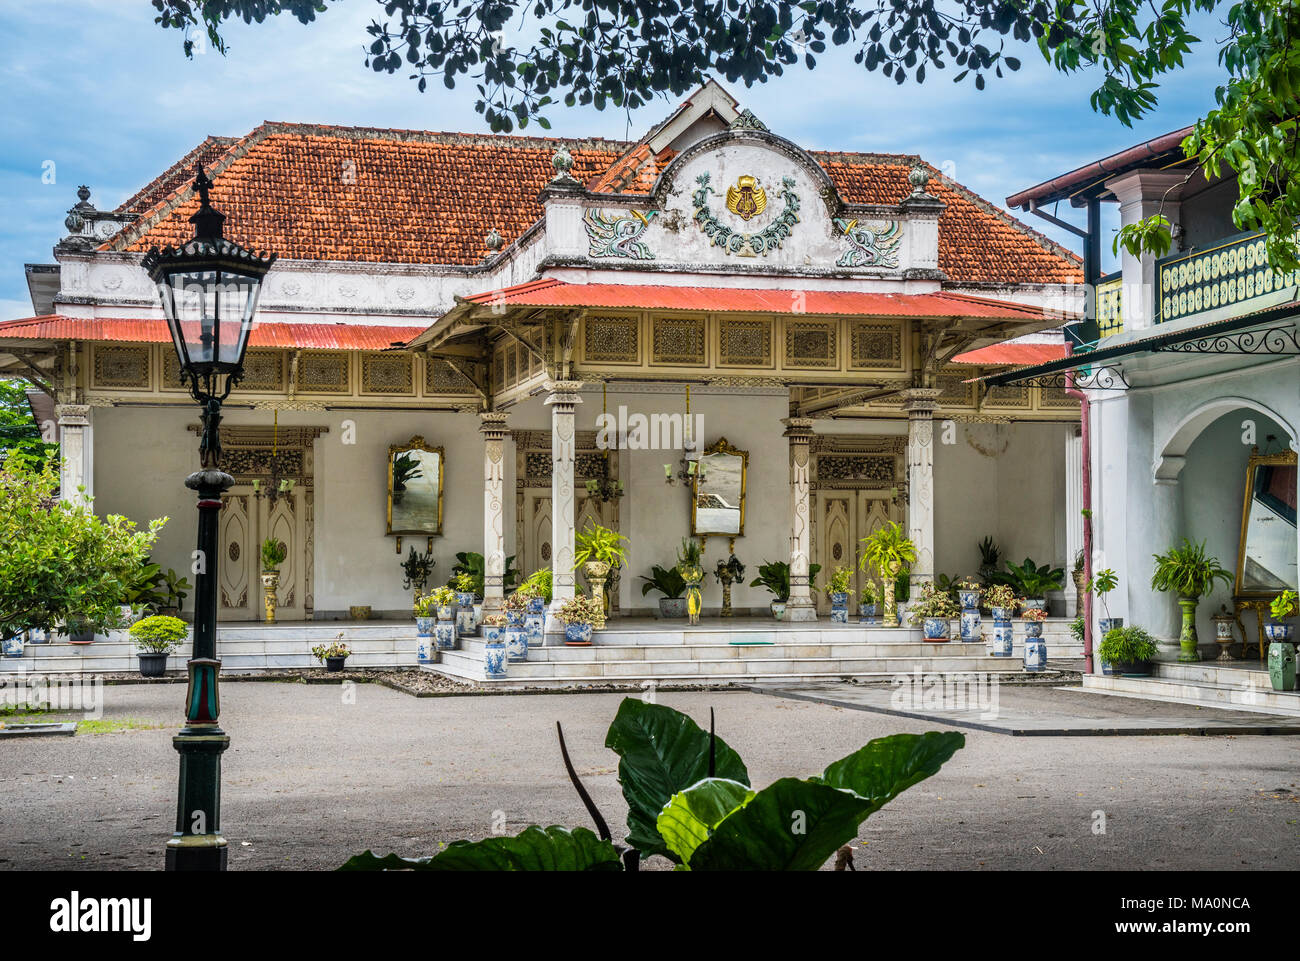 Prominente palastartigen Gebäude der javanischen Architektur ein, die von holländischen Kolonialstil beeinflusst, Gedong Jene, die auch als das gelbe Gebäude an der Kraton bekannt Stockfoto